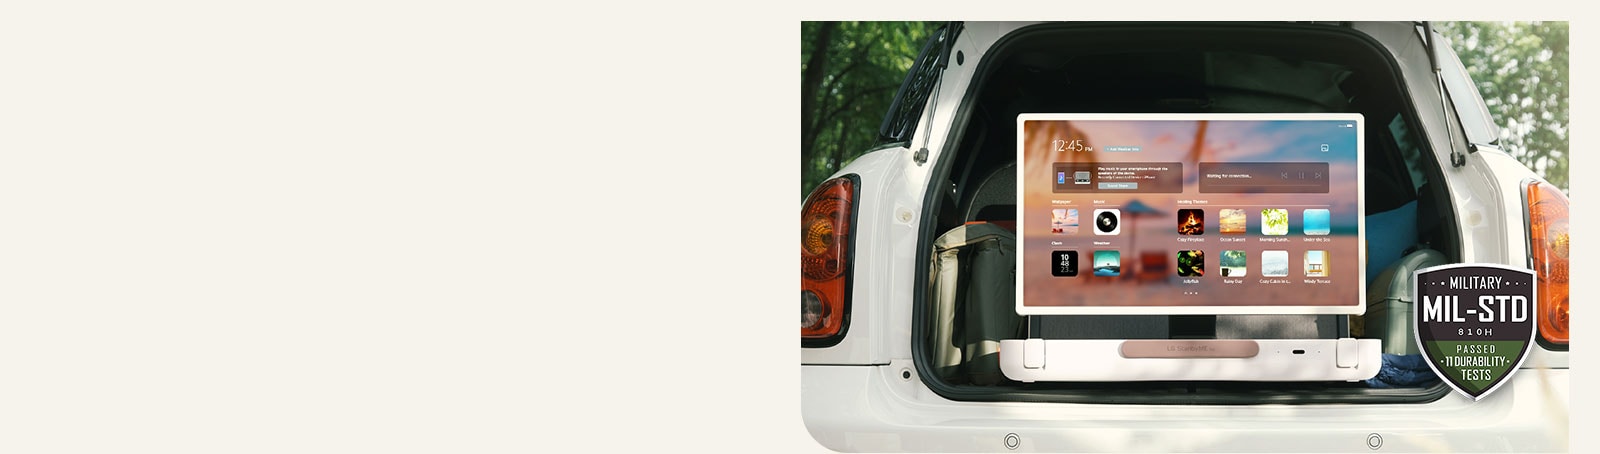 מבט קדמי על LG StanbyME Go. המוצר מונח במכונית, המסך במצב אופקי ומציג את מסך הבית. בצידה השמאלי התחתון של התמונה מוצג סמל של סטנדרט צבאי.